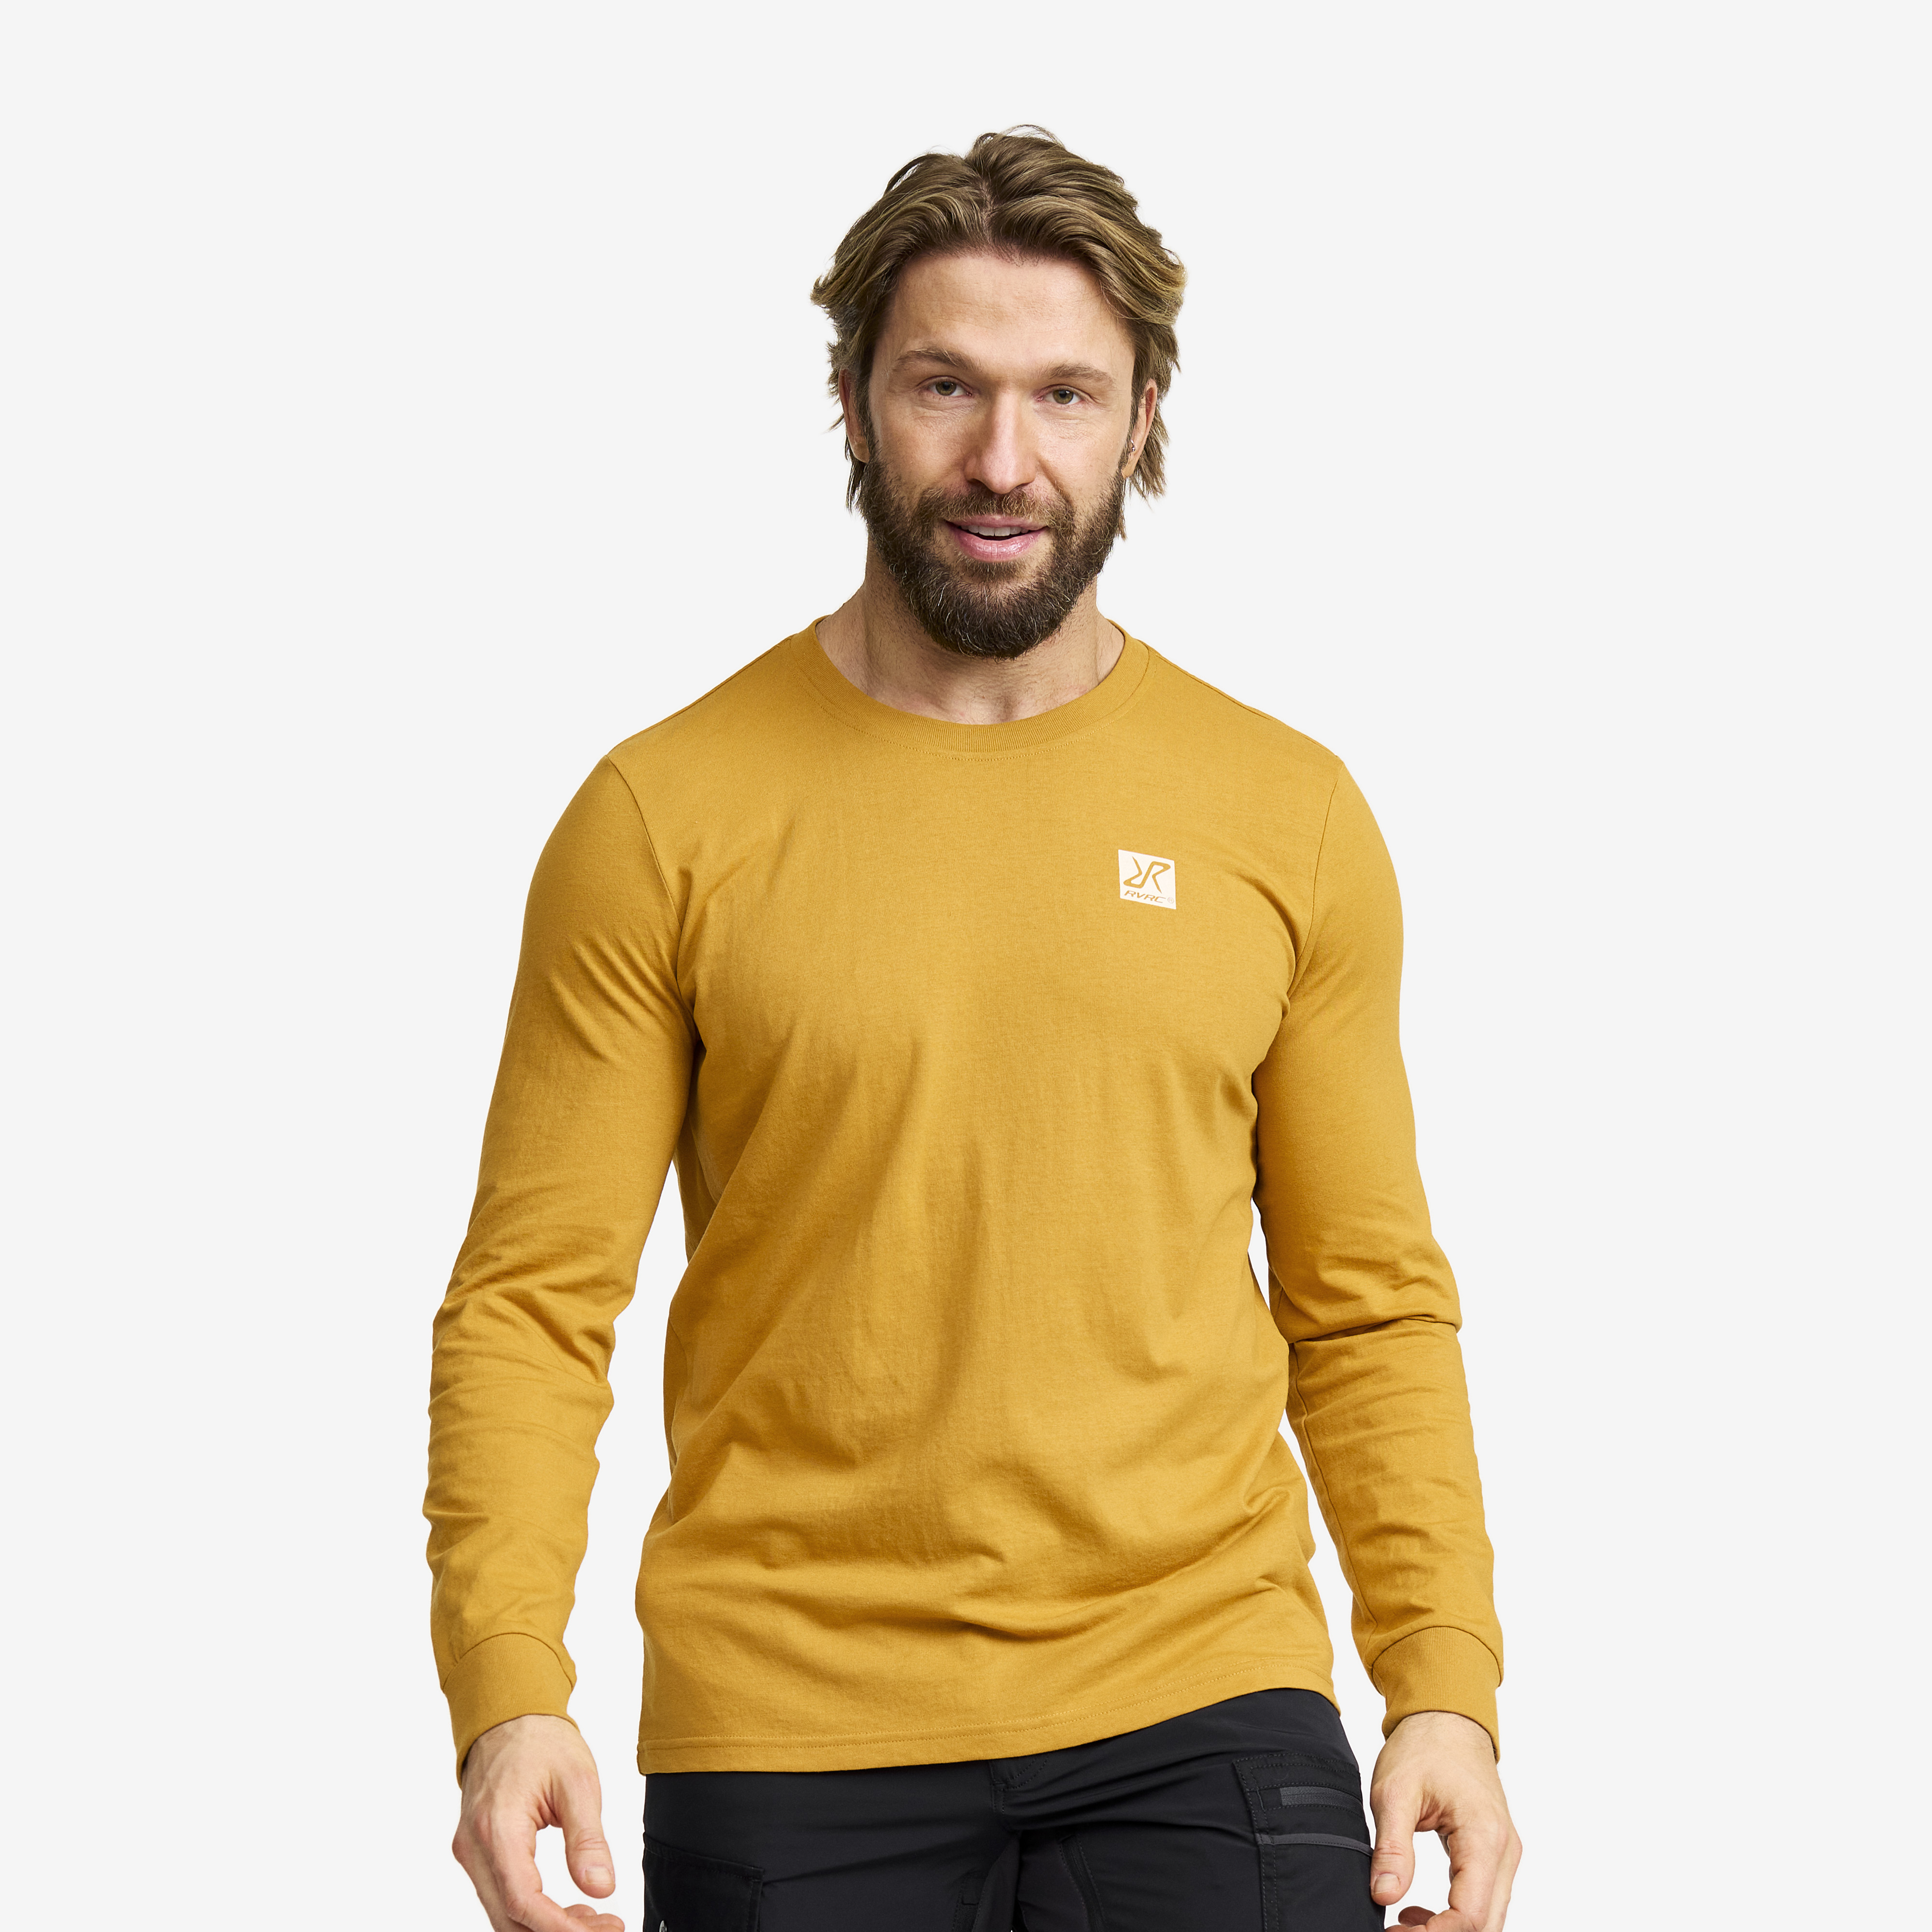 Easy Long-sleeved T-shirt Harvest Gold Men